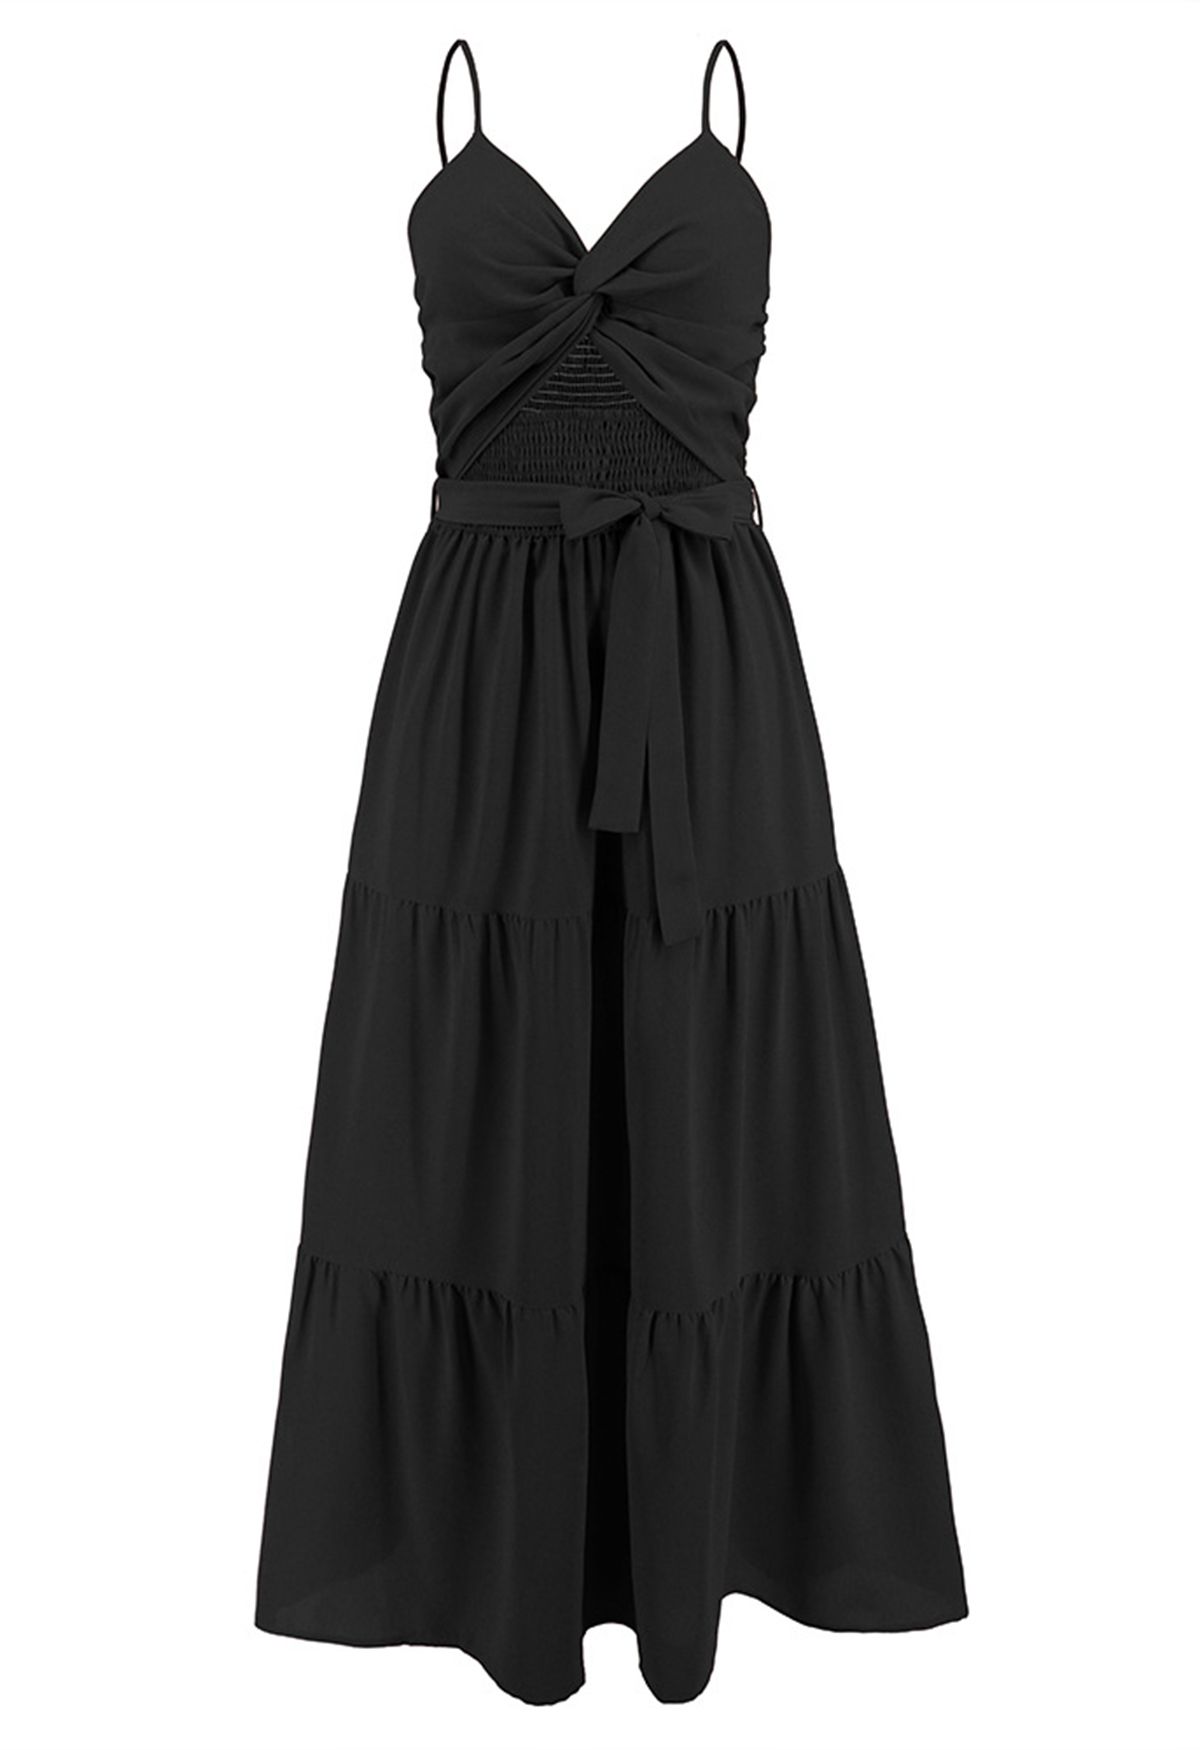 فستان قصير بتصميم ملفوف من الكامي مزركش باللون الأسود